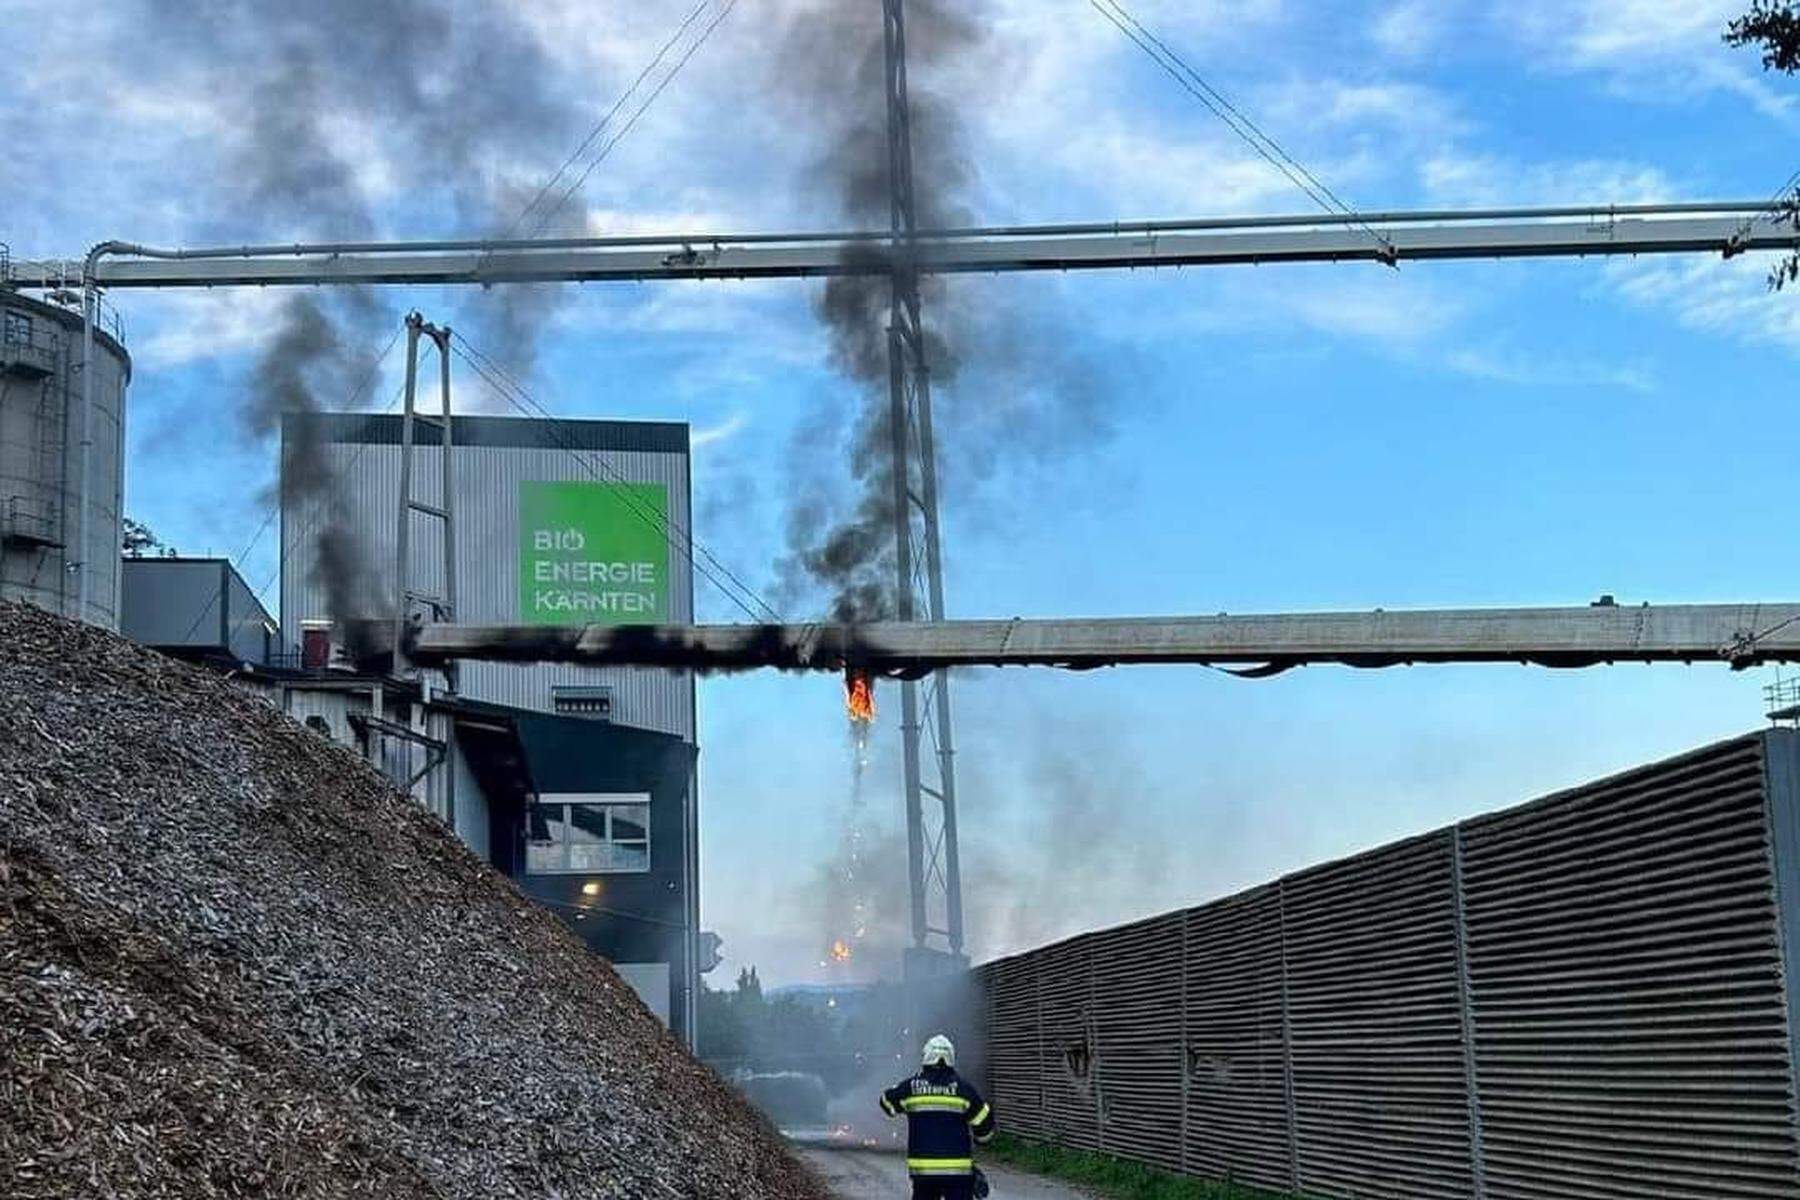 Technischer Defekt: Mehr als 50 Einsatzkräfte bei Brand in Kärntner Industriegebiet gefordert